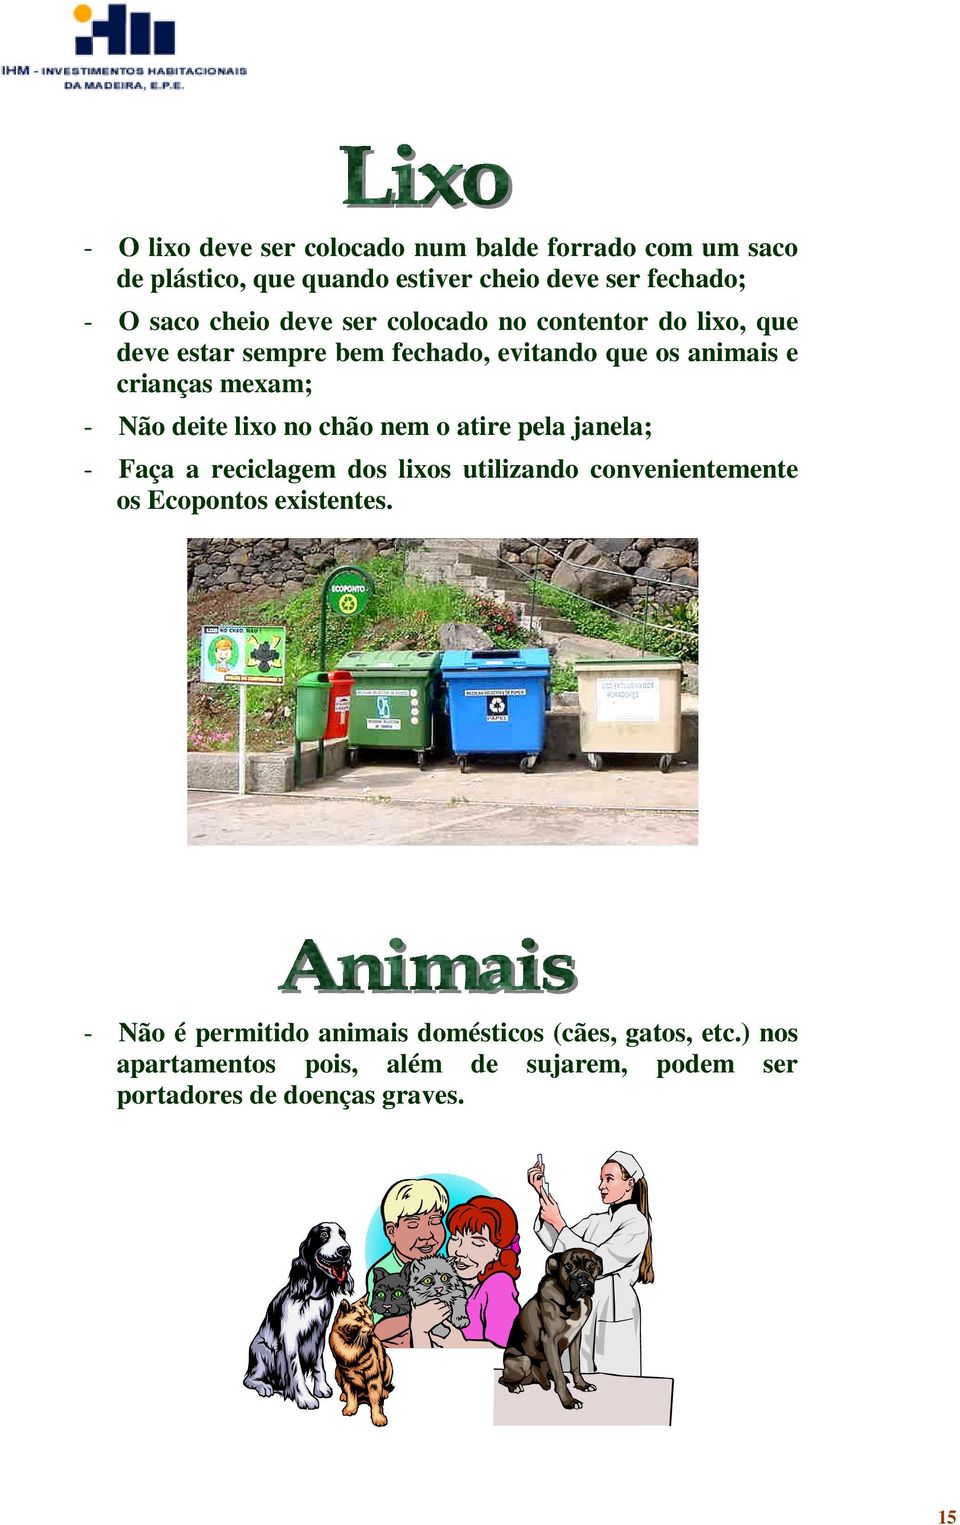 lixo no chão nem o atire pela janela; - Faça a reciclagem dos lixos utilizando convenientemente os Ecopontos existentes.